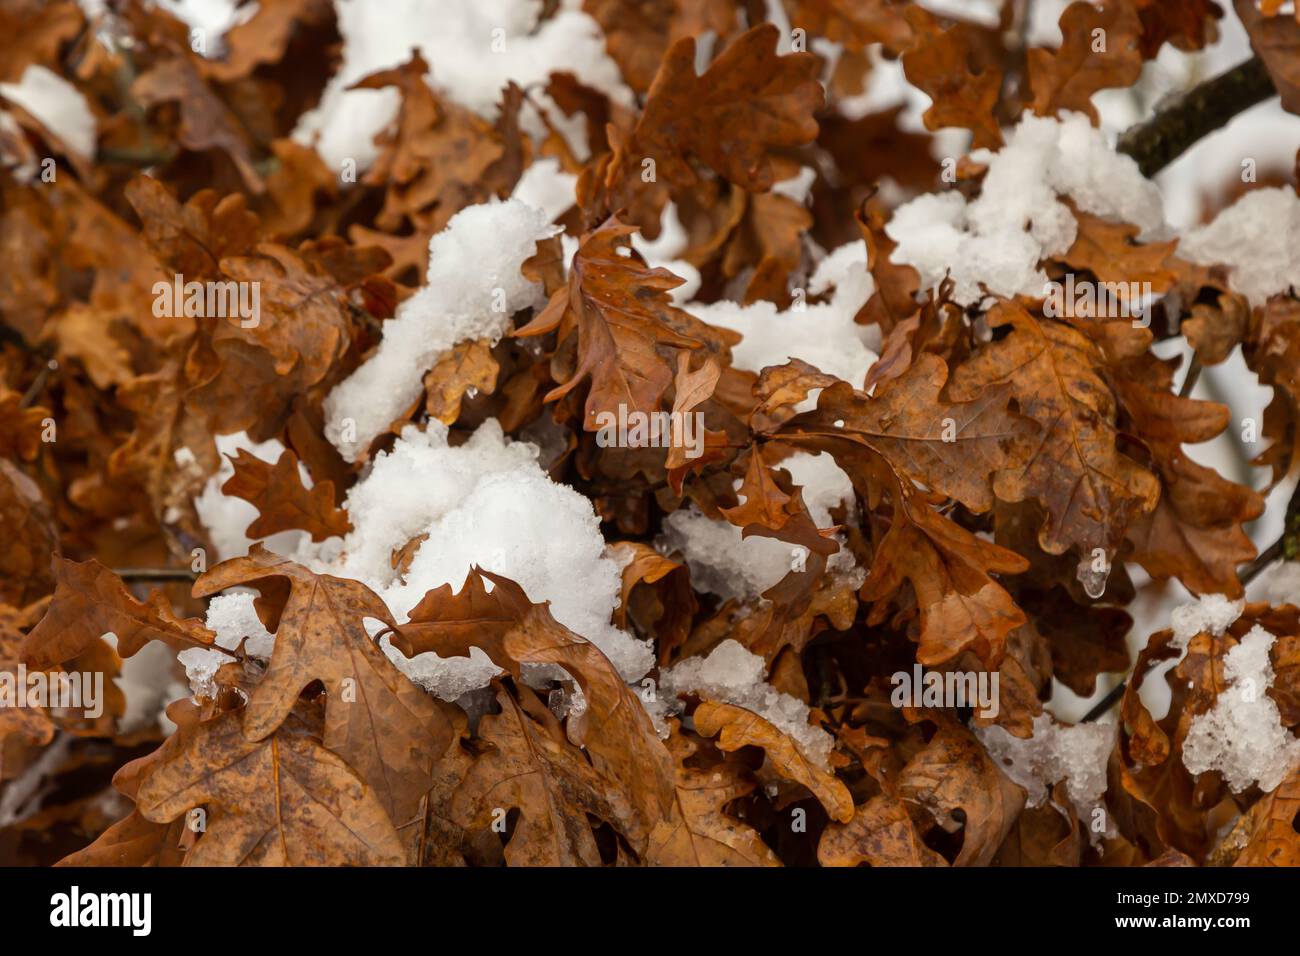 Prima neve coperta foglie colorate autunno in albero, marca albero con foglie gialle sotto neve. L'autunno lascia sotto la neve. Foglie di quercia ricoperte di neve in vino Foto Stock